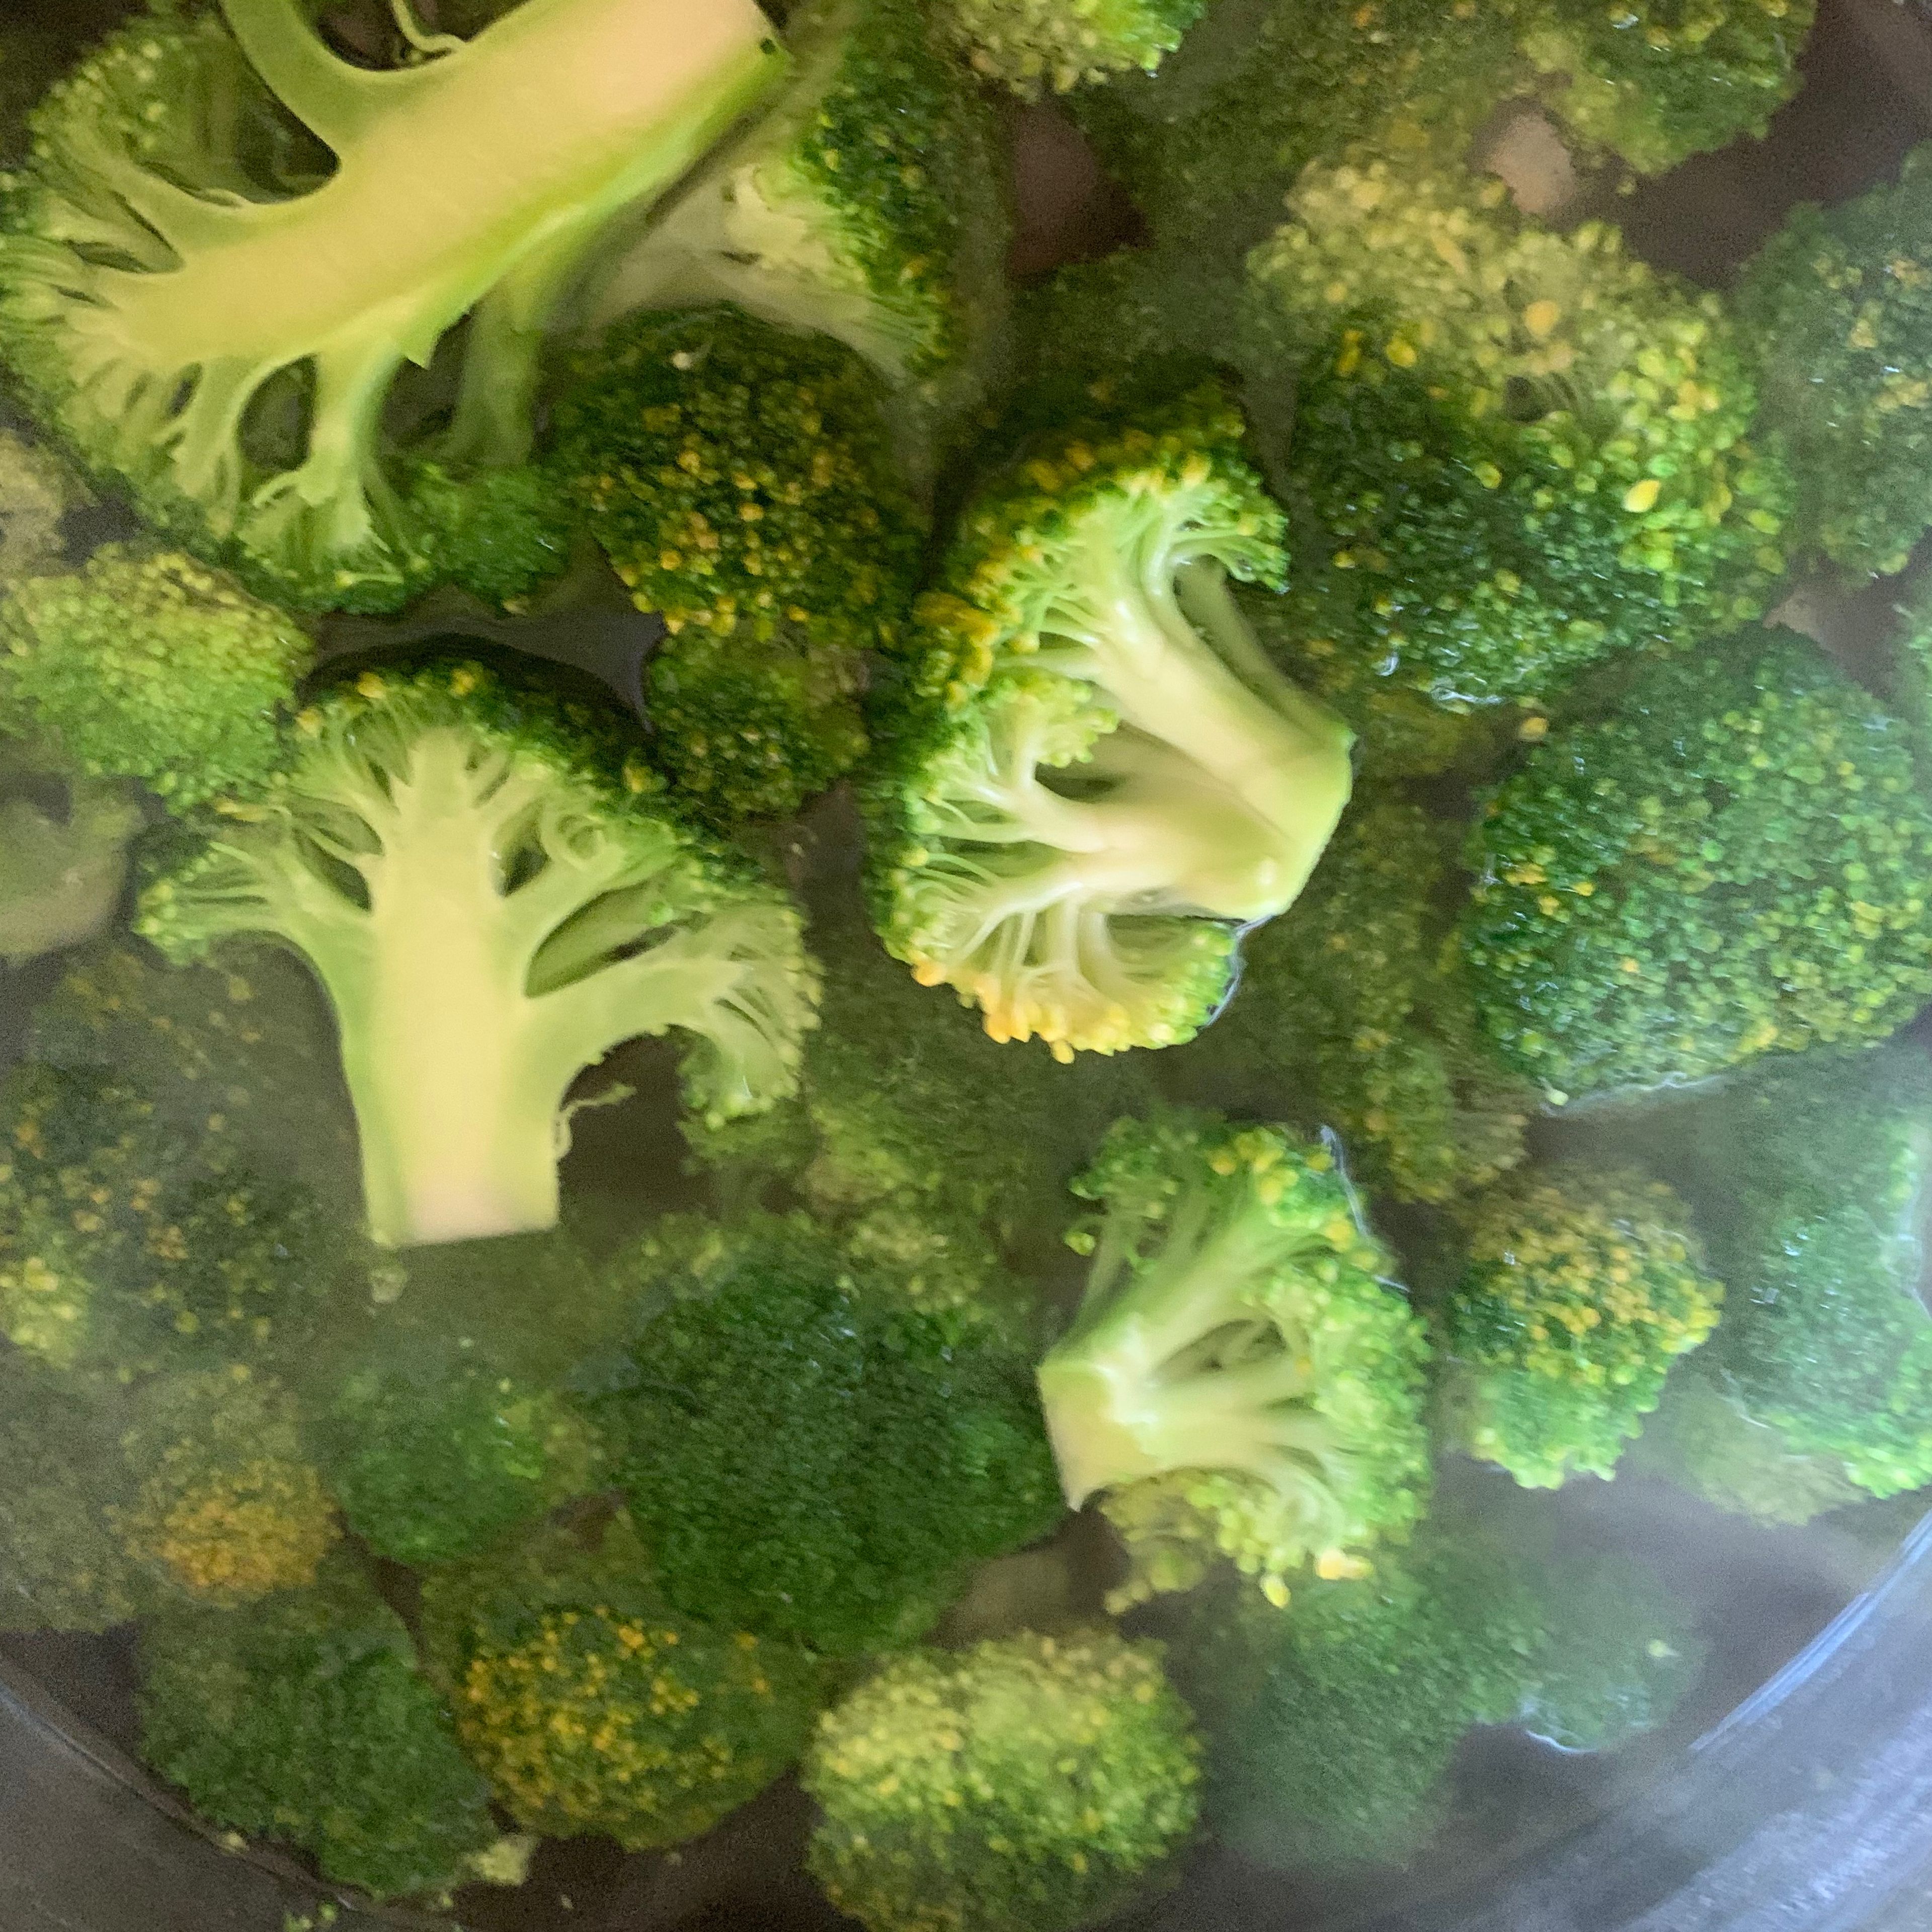 Nun den Brokkoli kurz - ca 1/2 Minute - in kochendes Wasser geben. Mit einem Schaumlöffel wieder herausfischen und abkühlen lassen.